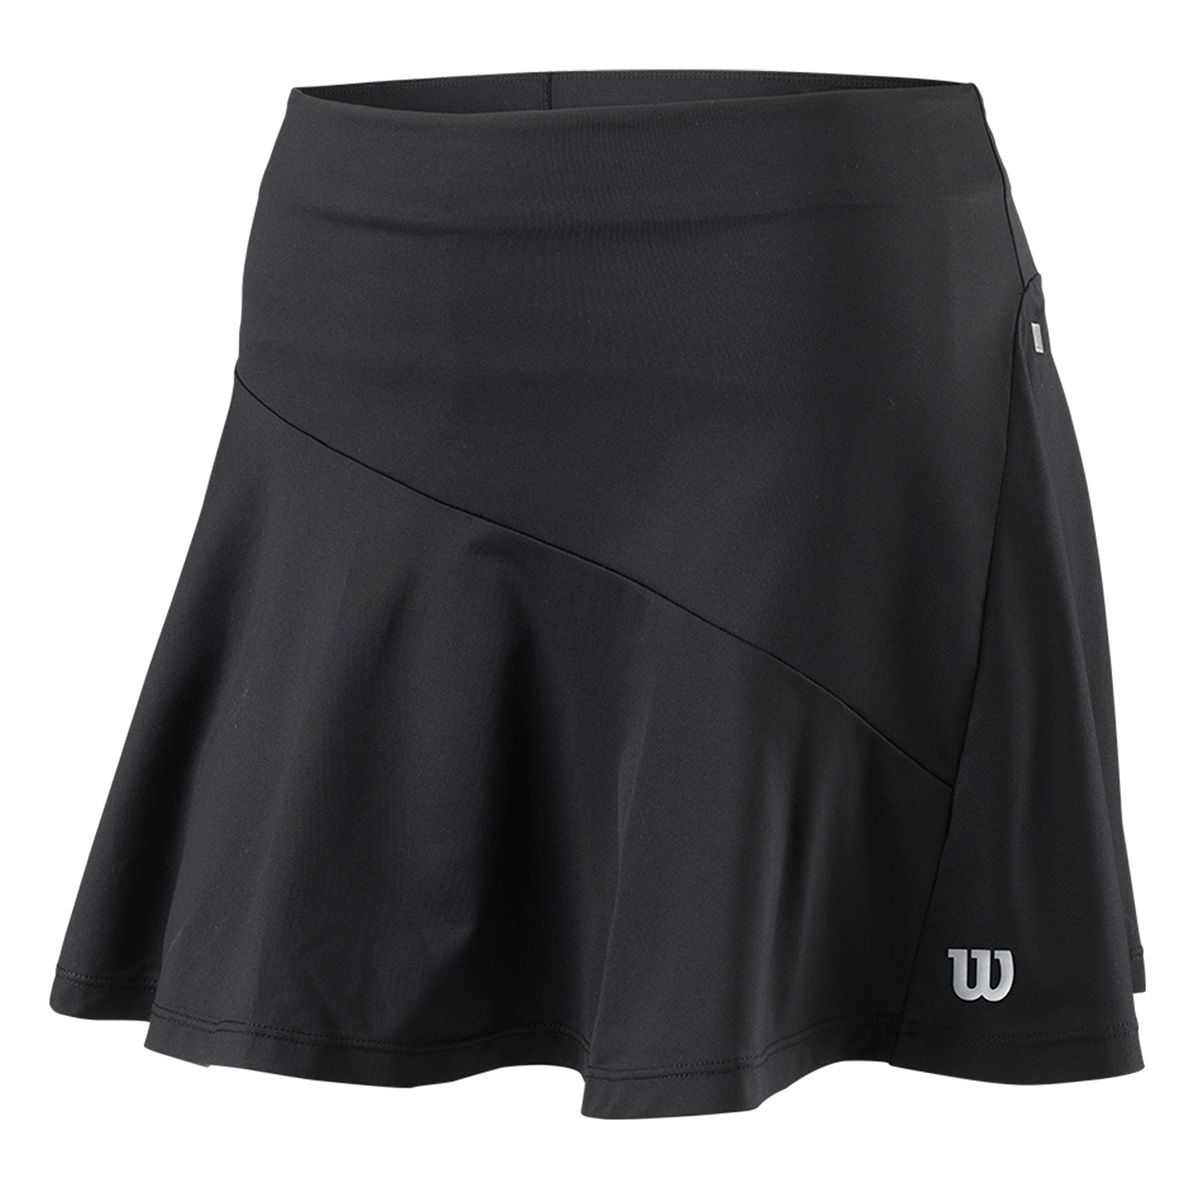 Wilson Training 12.5'' Women's Tennis Skirt WRA808102